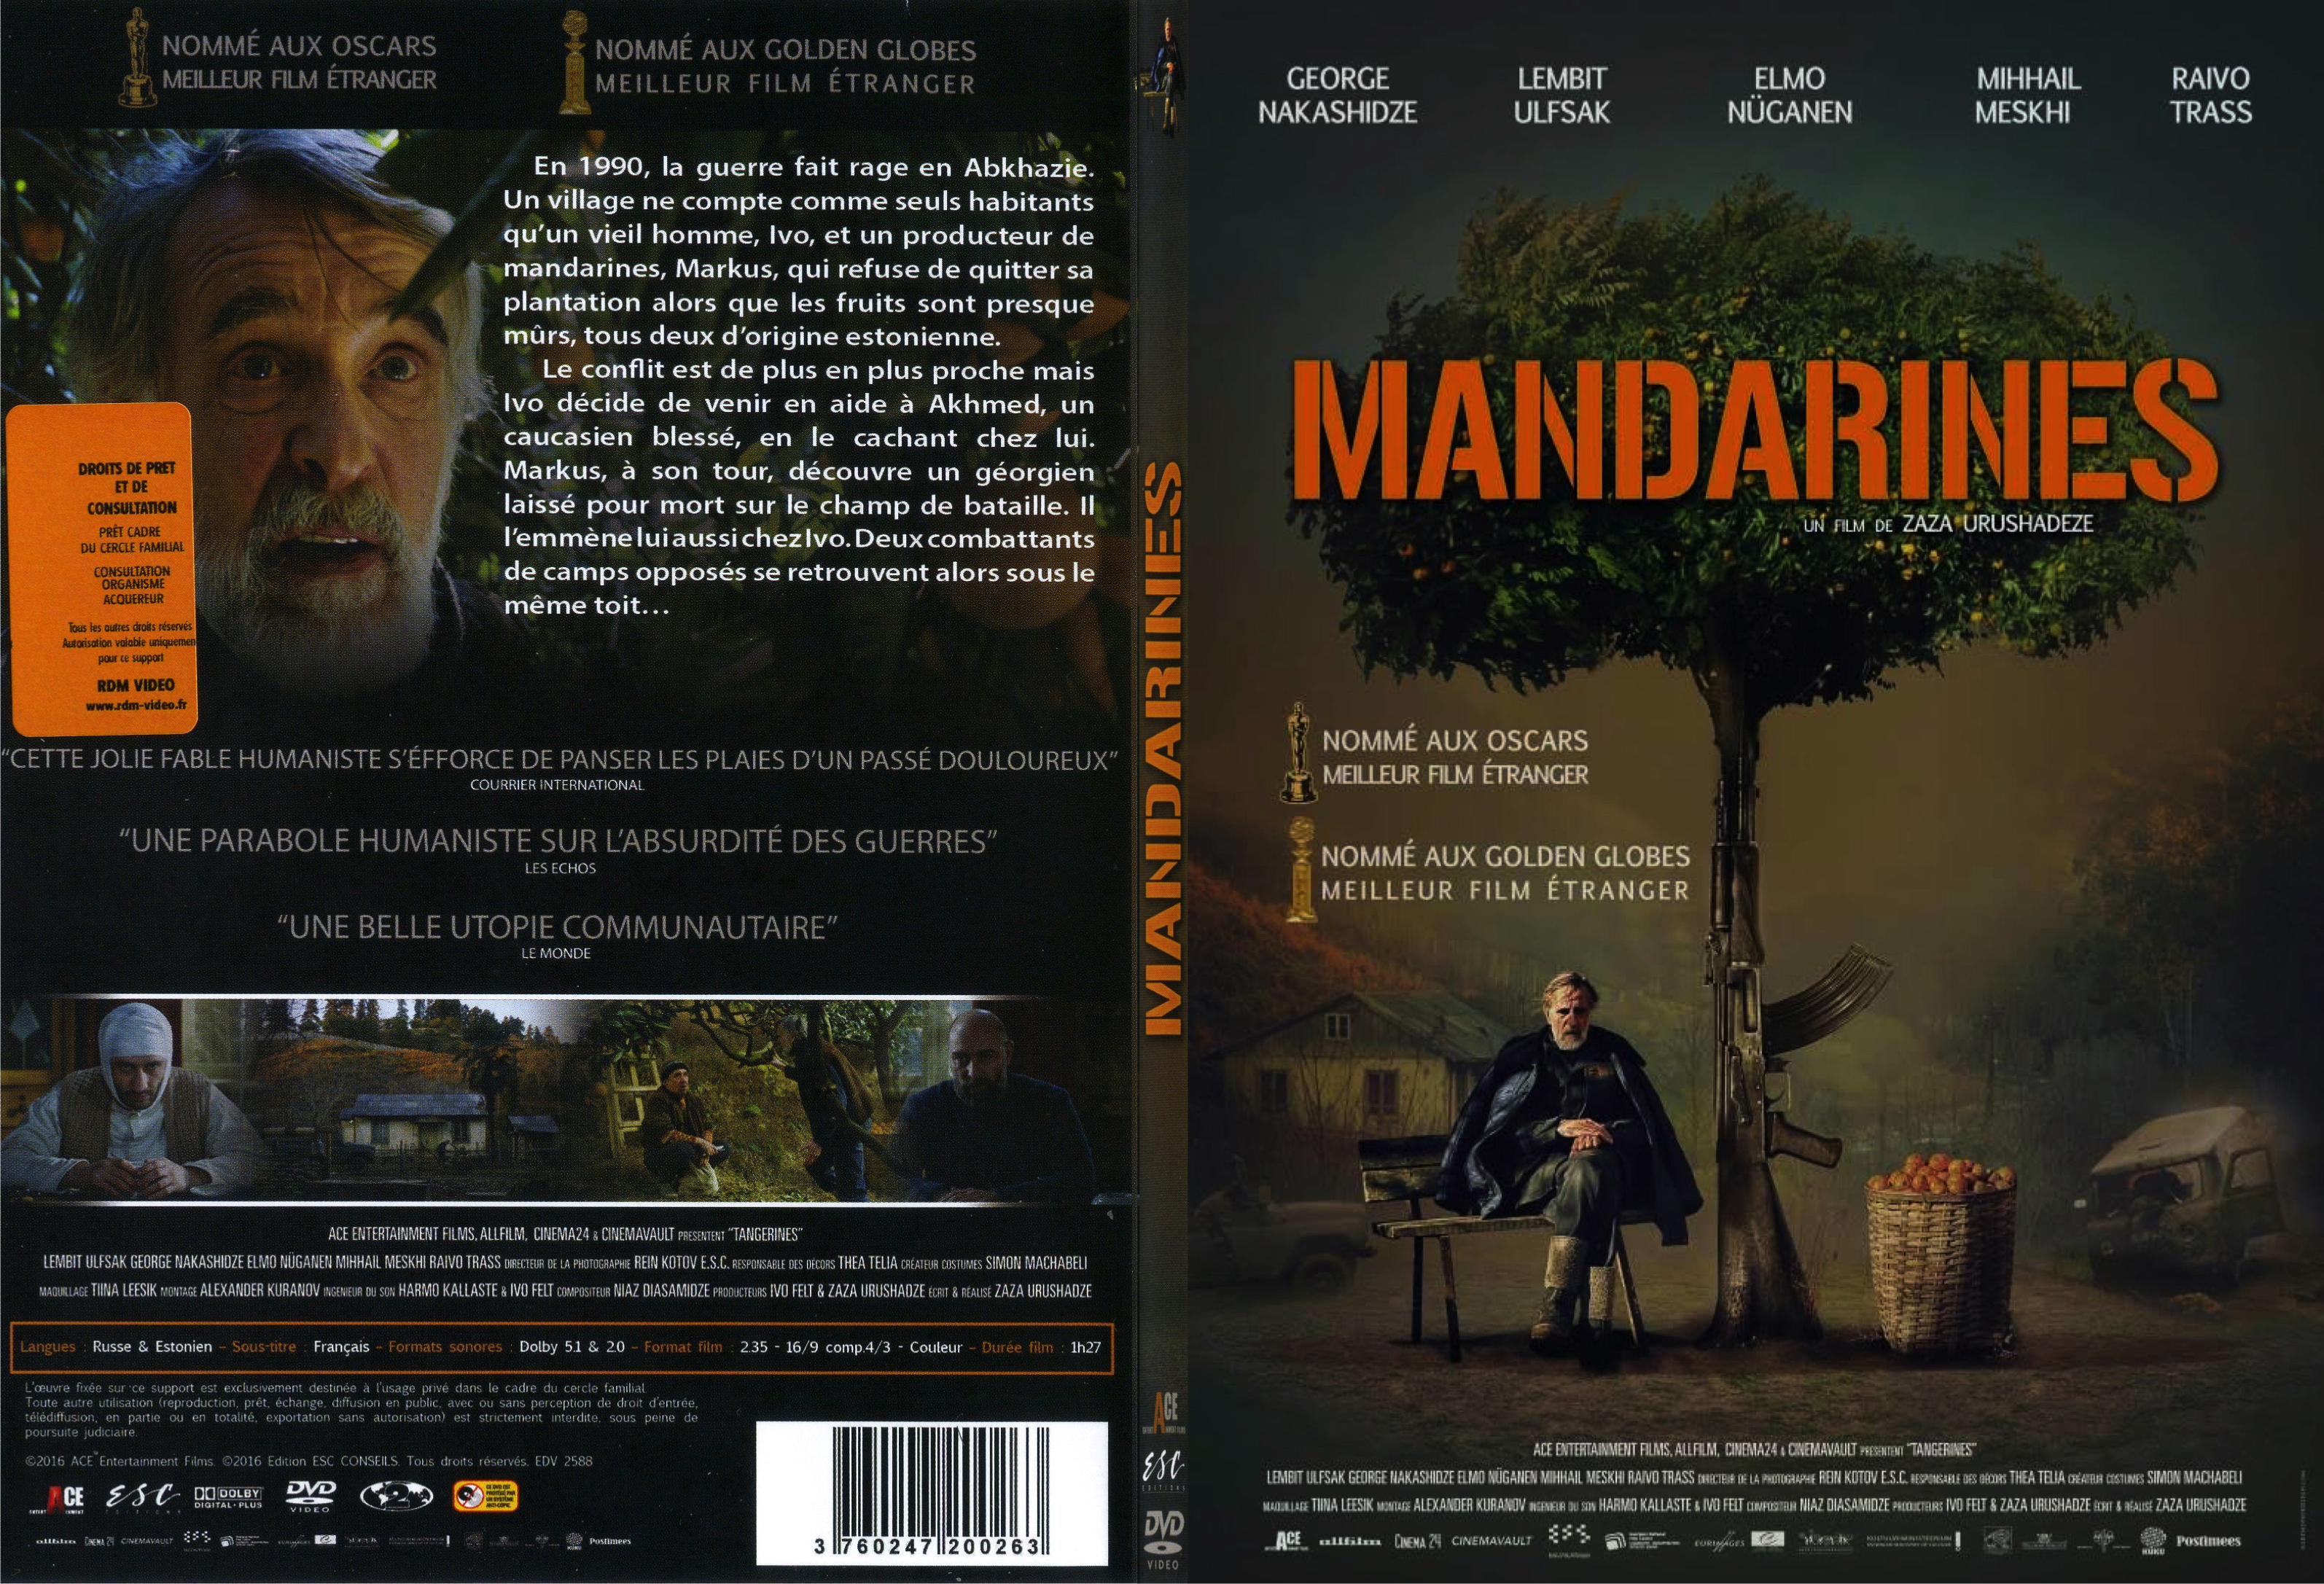 Jaquette DVD Mandarines - SLIM